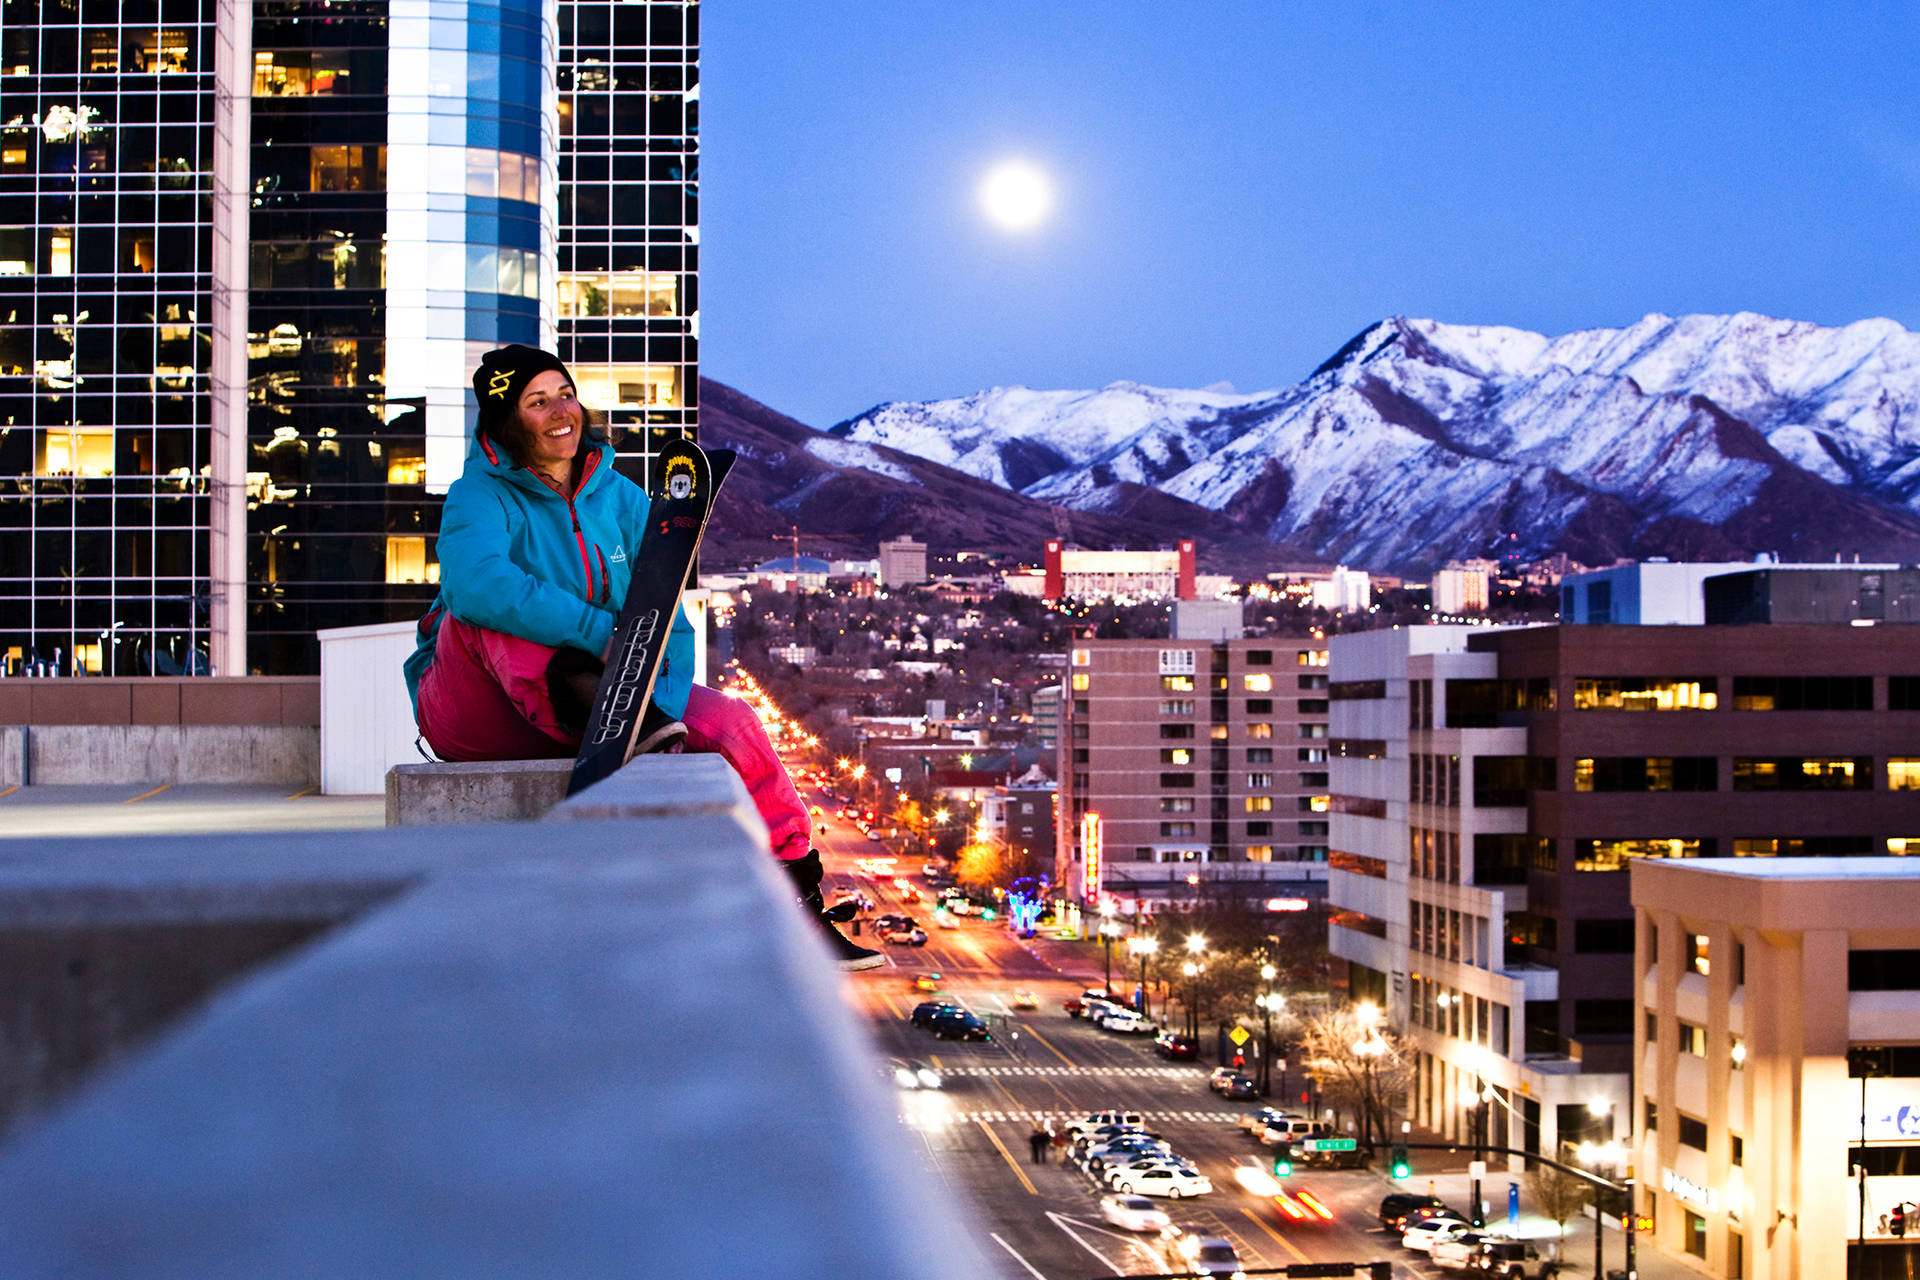 Salt Lake City Girl On Ledge